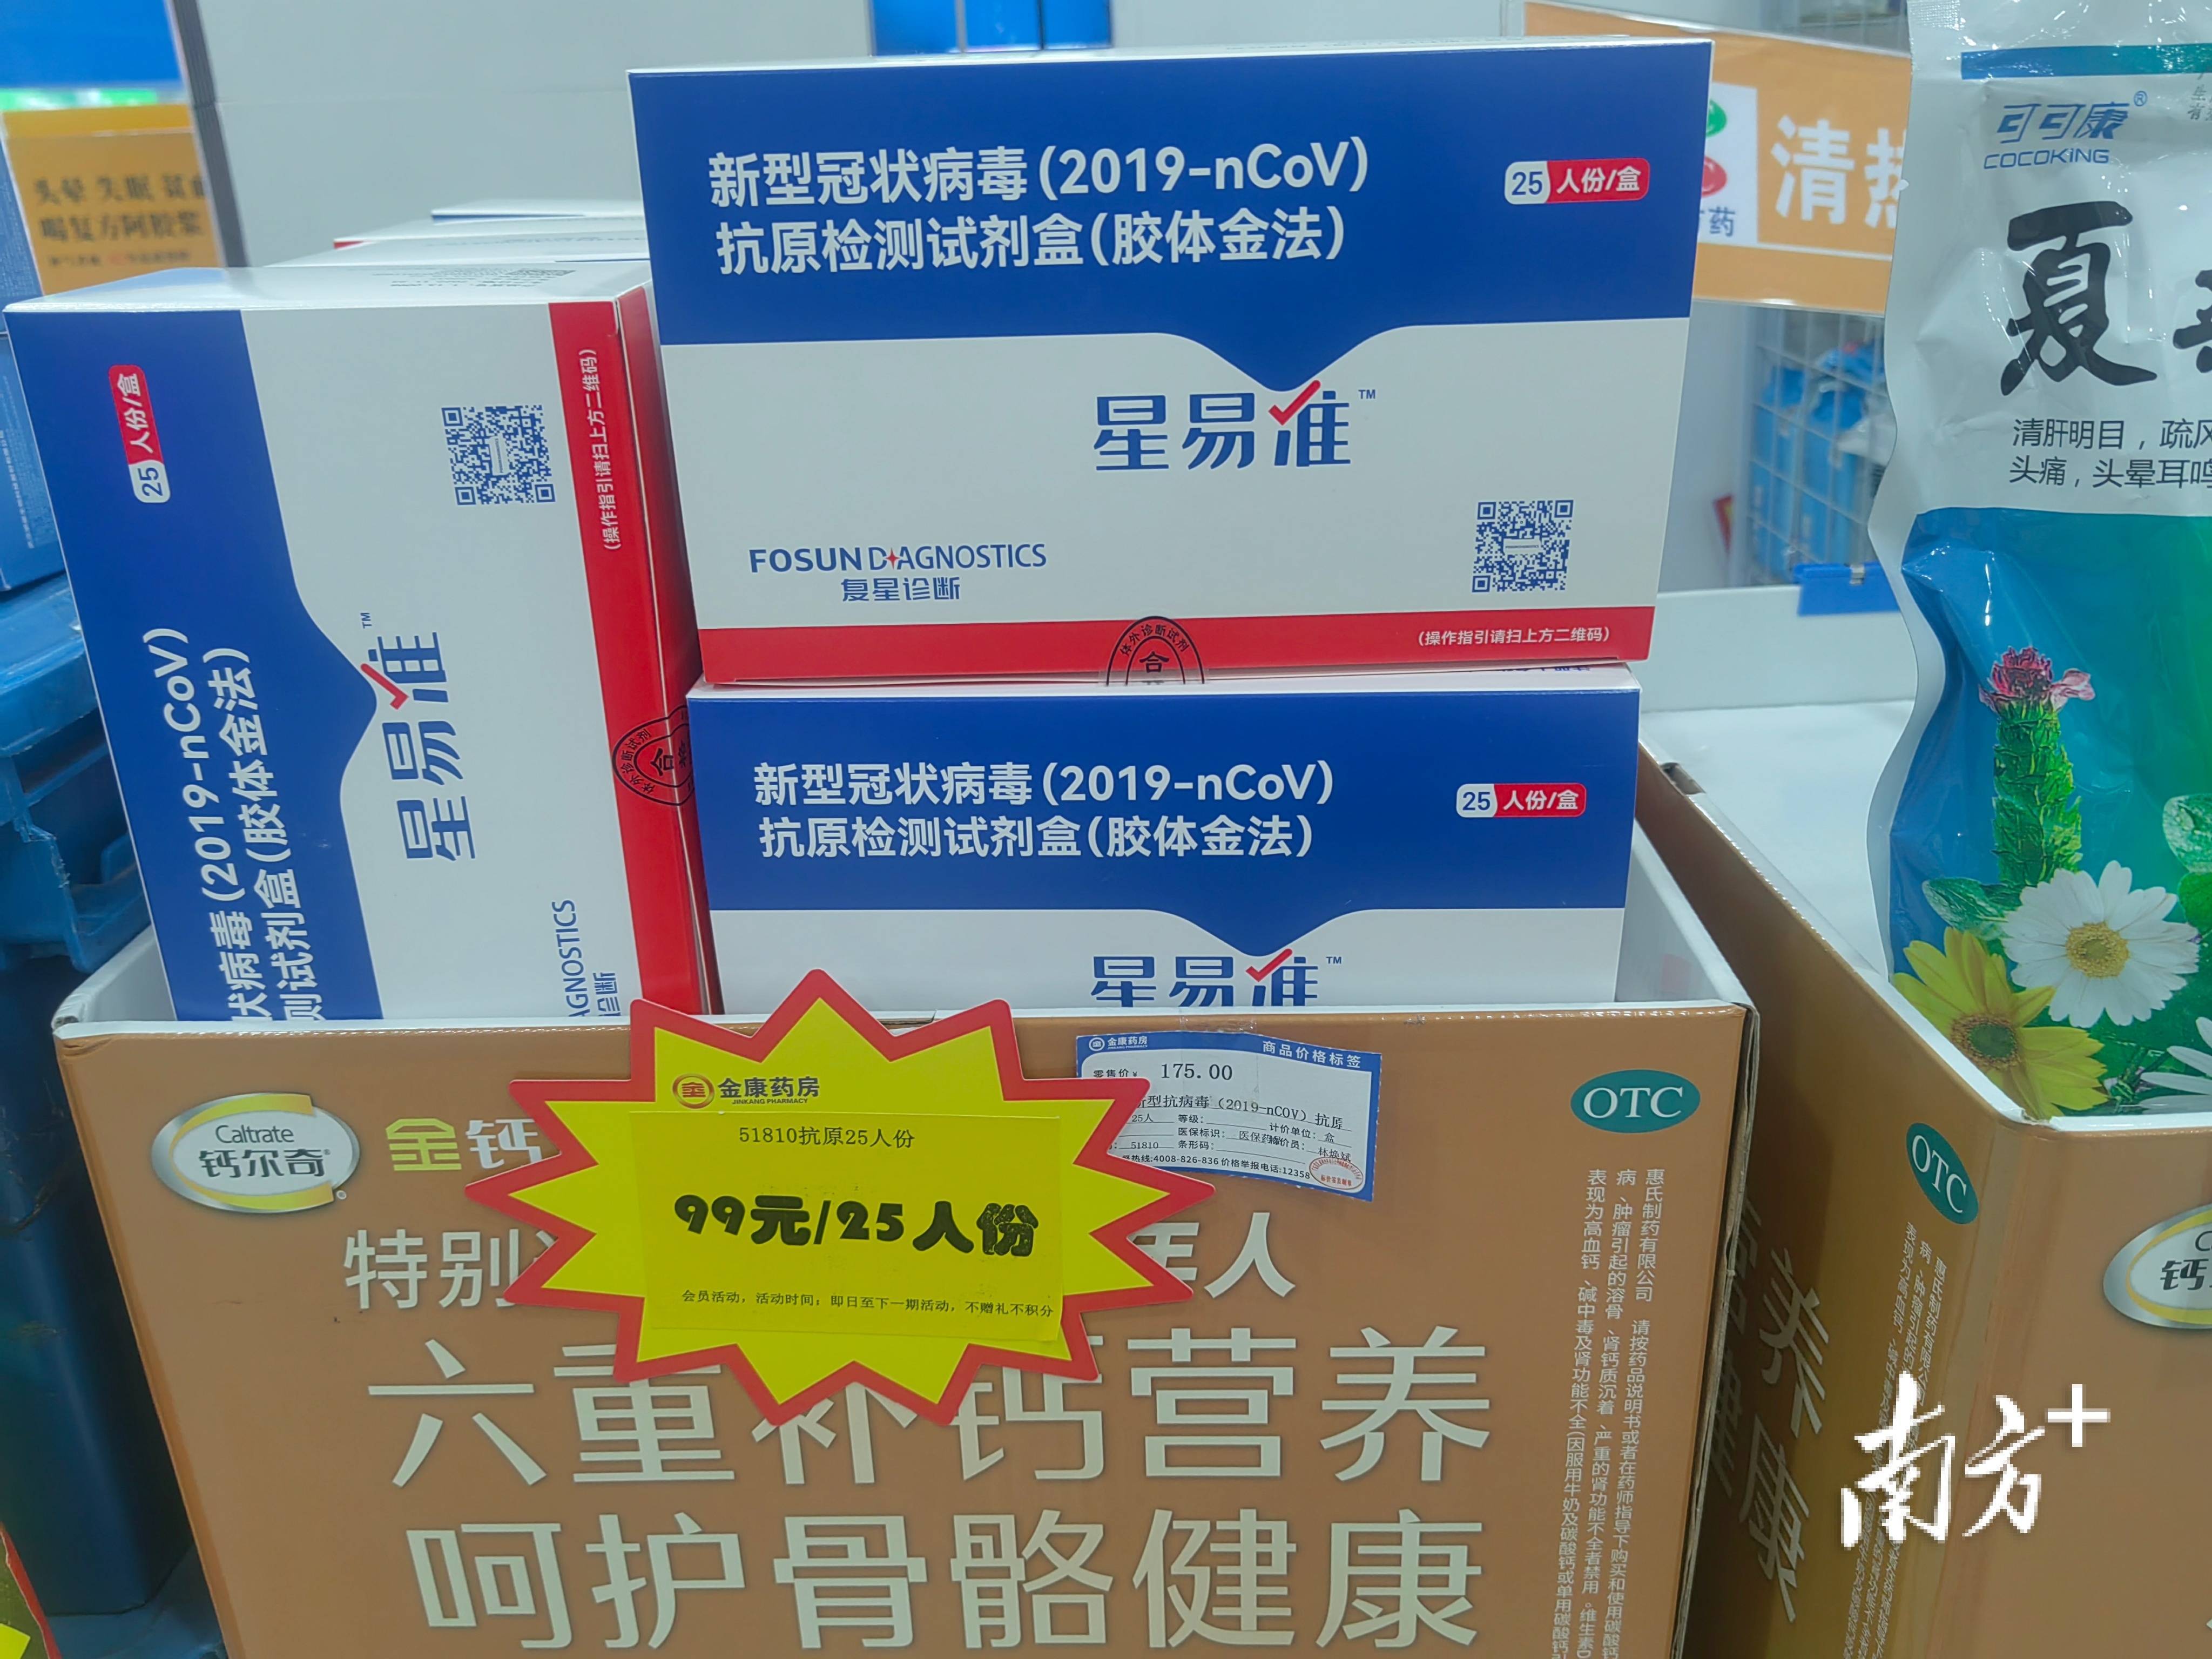 抗原检测试剂盒、抗病毒药物储备如何？记者探访了广州40家药店